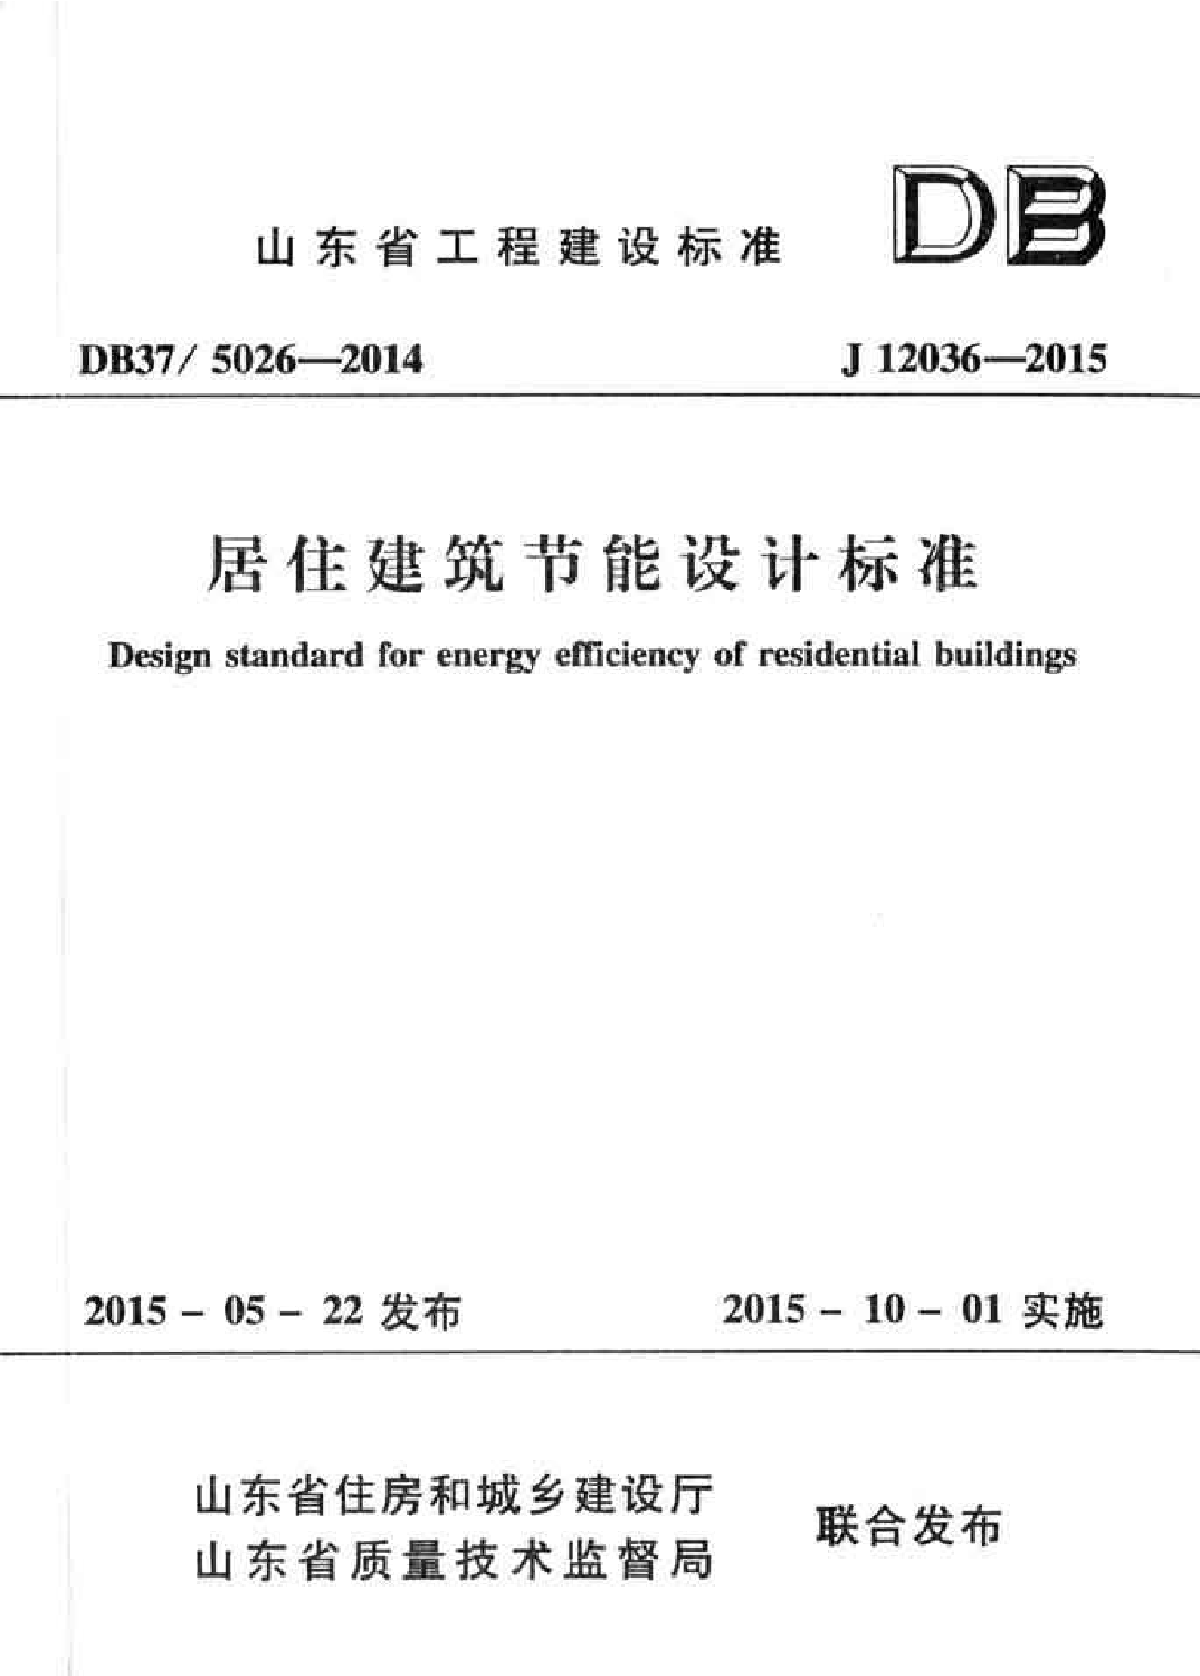 山东省居住建筑节能设计标准 DB375026-2014-图一